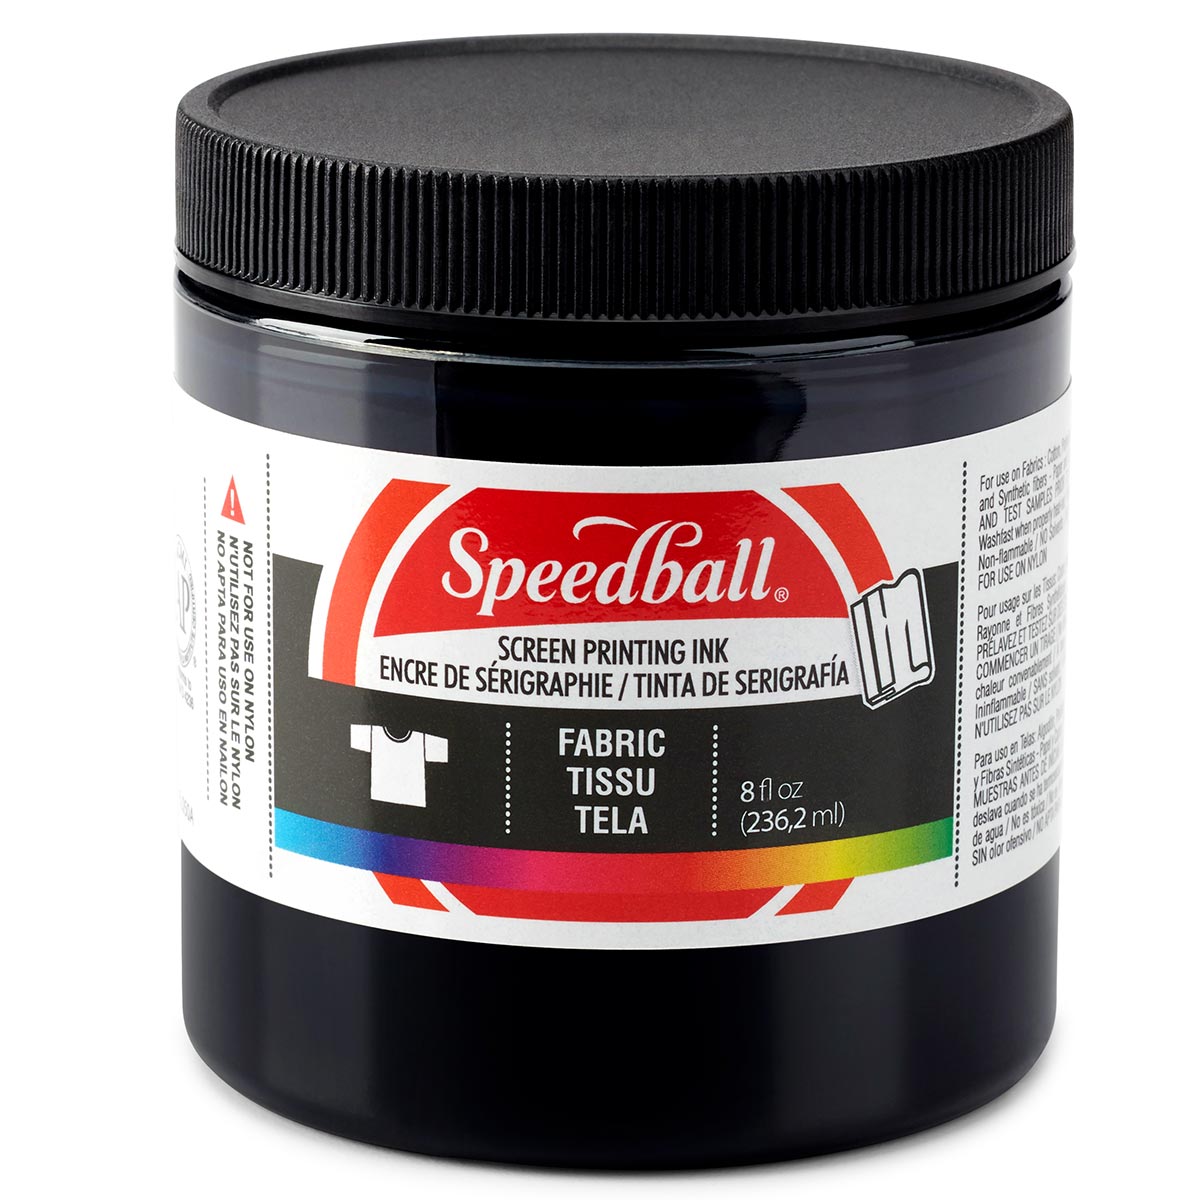 Speedball-Stoff Siebdruck Tinte 236ml (8oz) -Schwarz